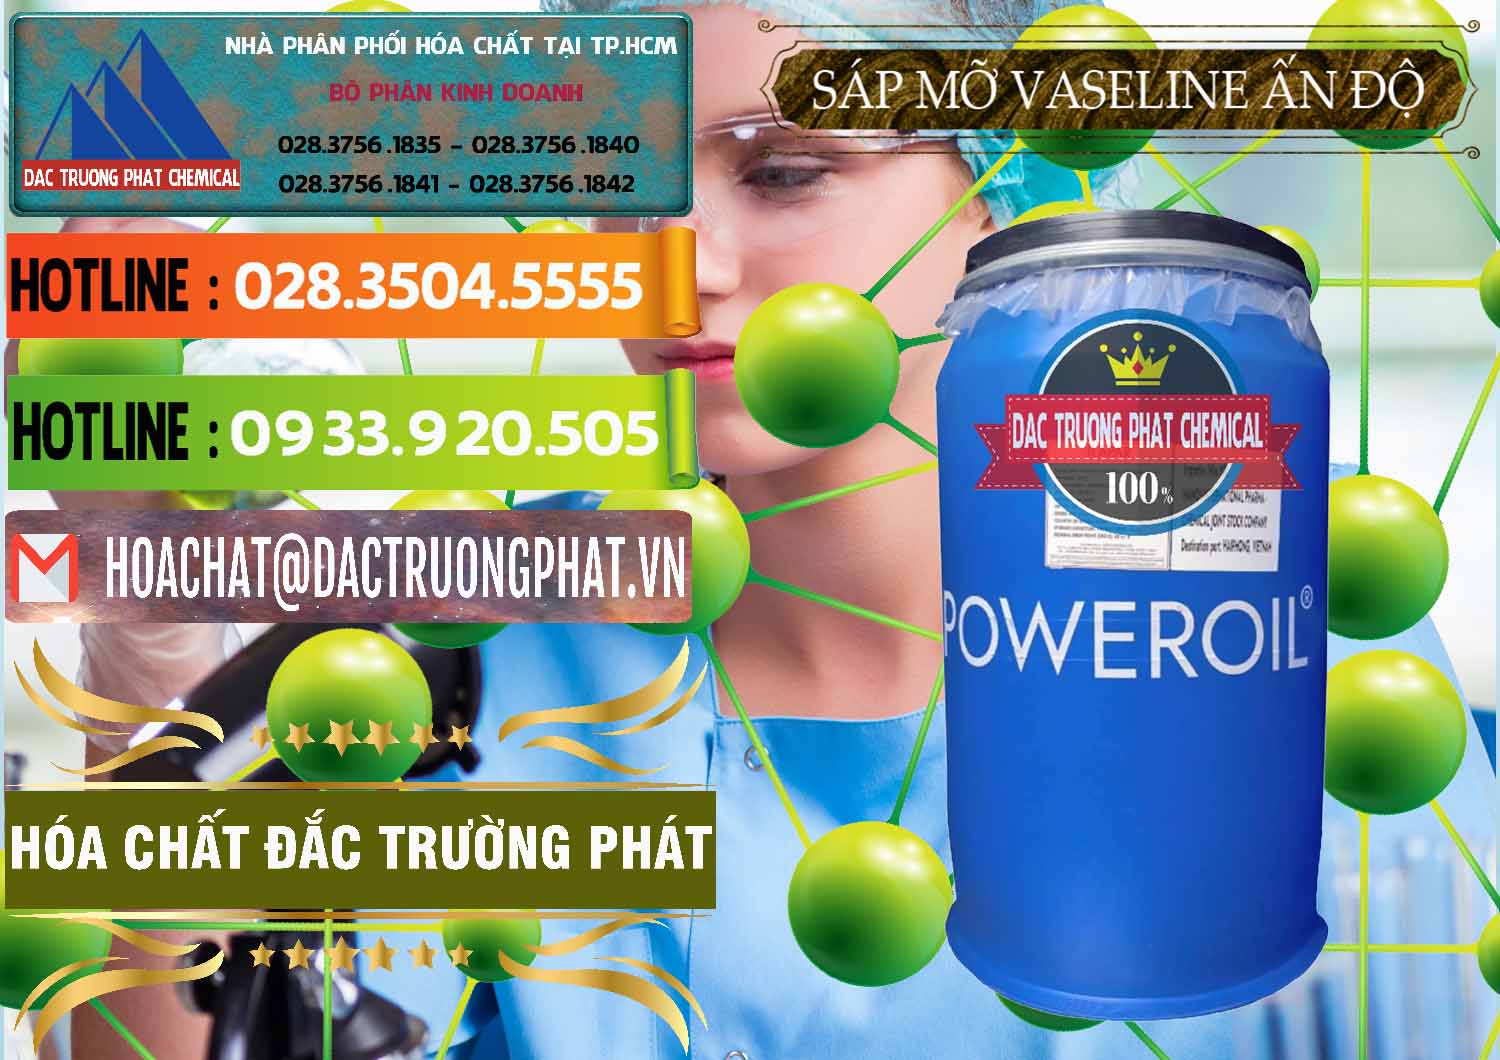 Phân phối và bán Sáp Mỡ Vaseline Ấn Độ India - 0372 - Nơi chuyên phân phối - bán hóa chất tại TP.HCM - cungcaphoachat.com.vn